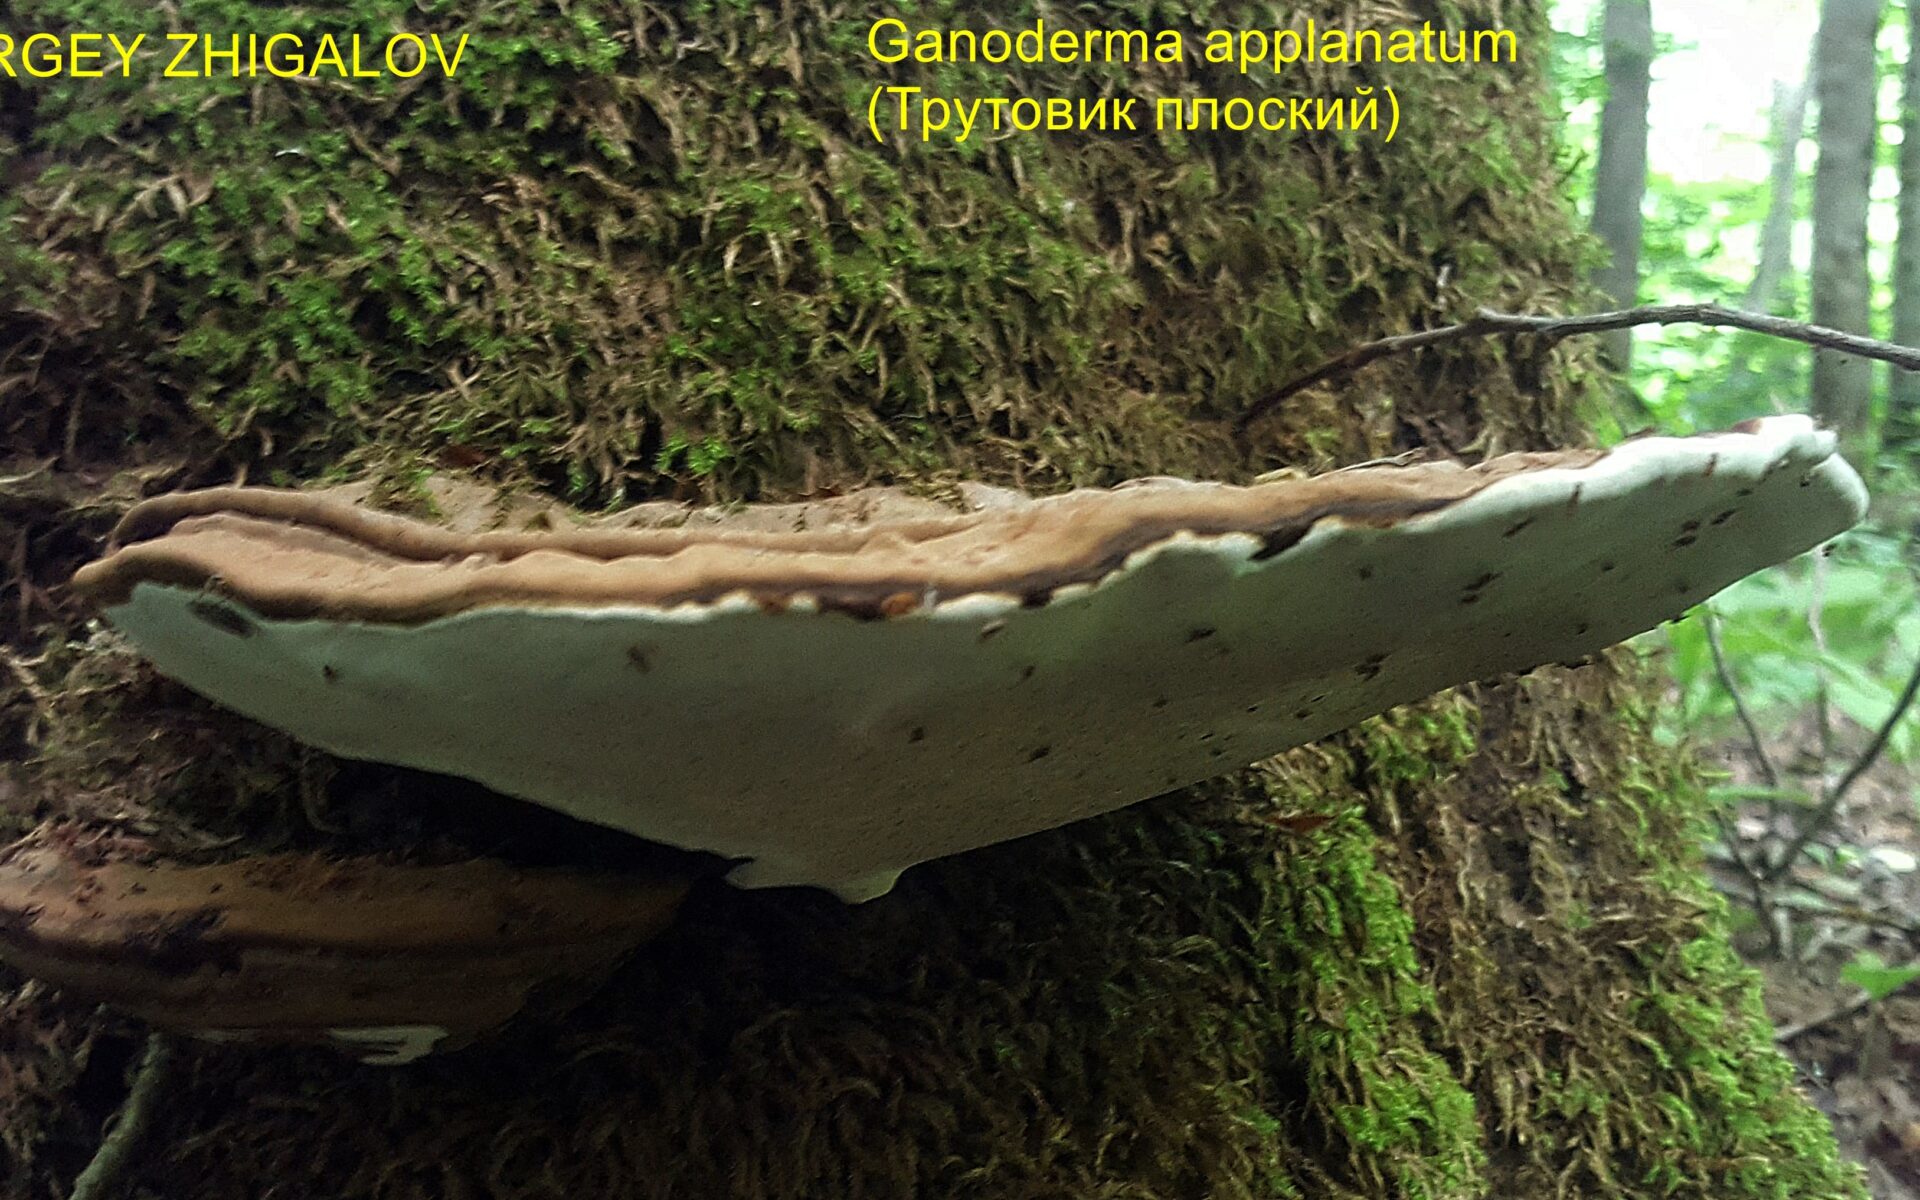 Трутовик плоский Ganoderma applanatum